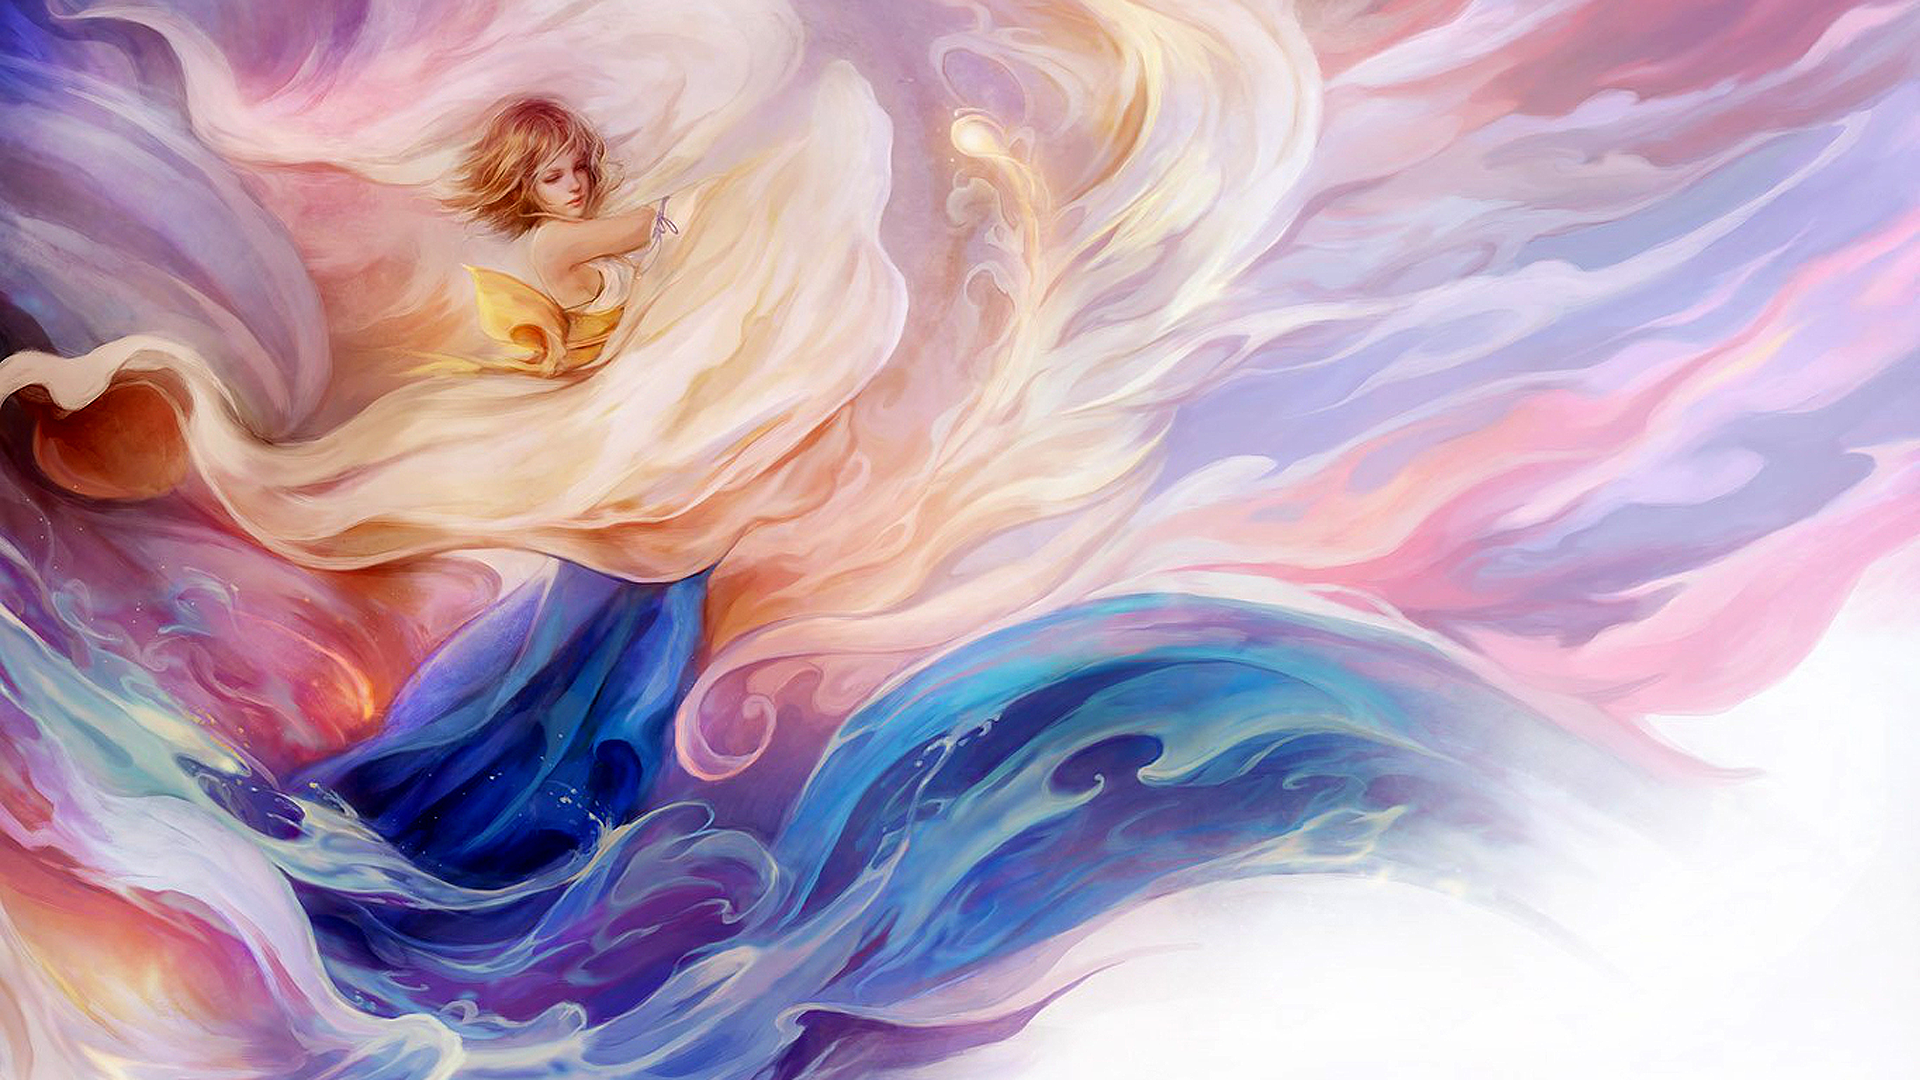 Final Fantasy X Yuna Dancing Video Game Art Video Game Characters Digital Art Water Artwork Ignatius 1920x1080